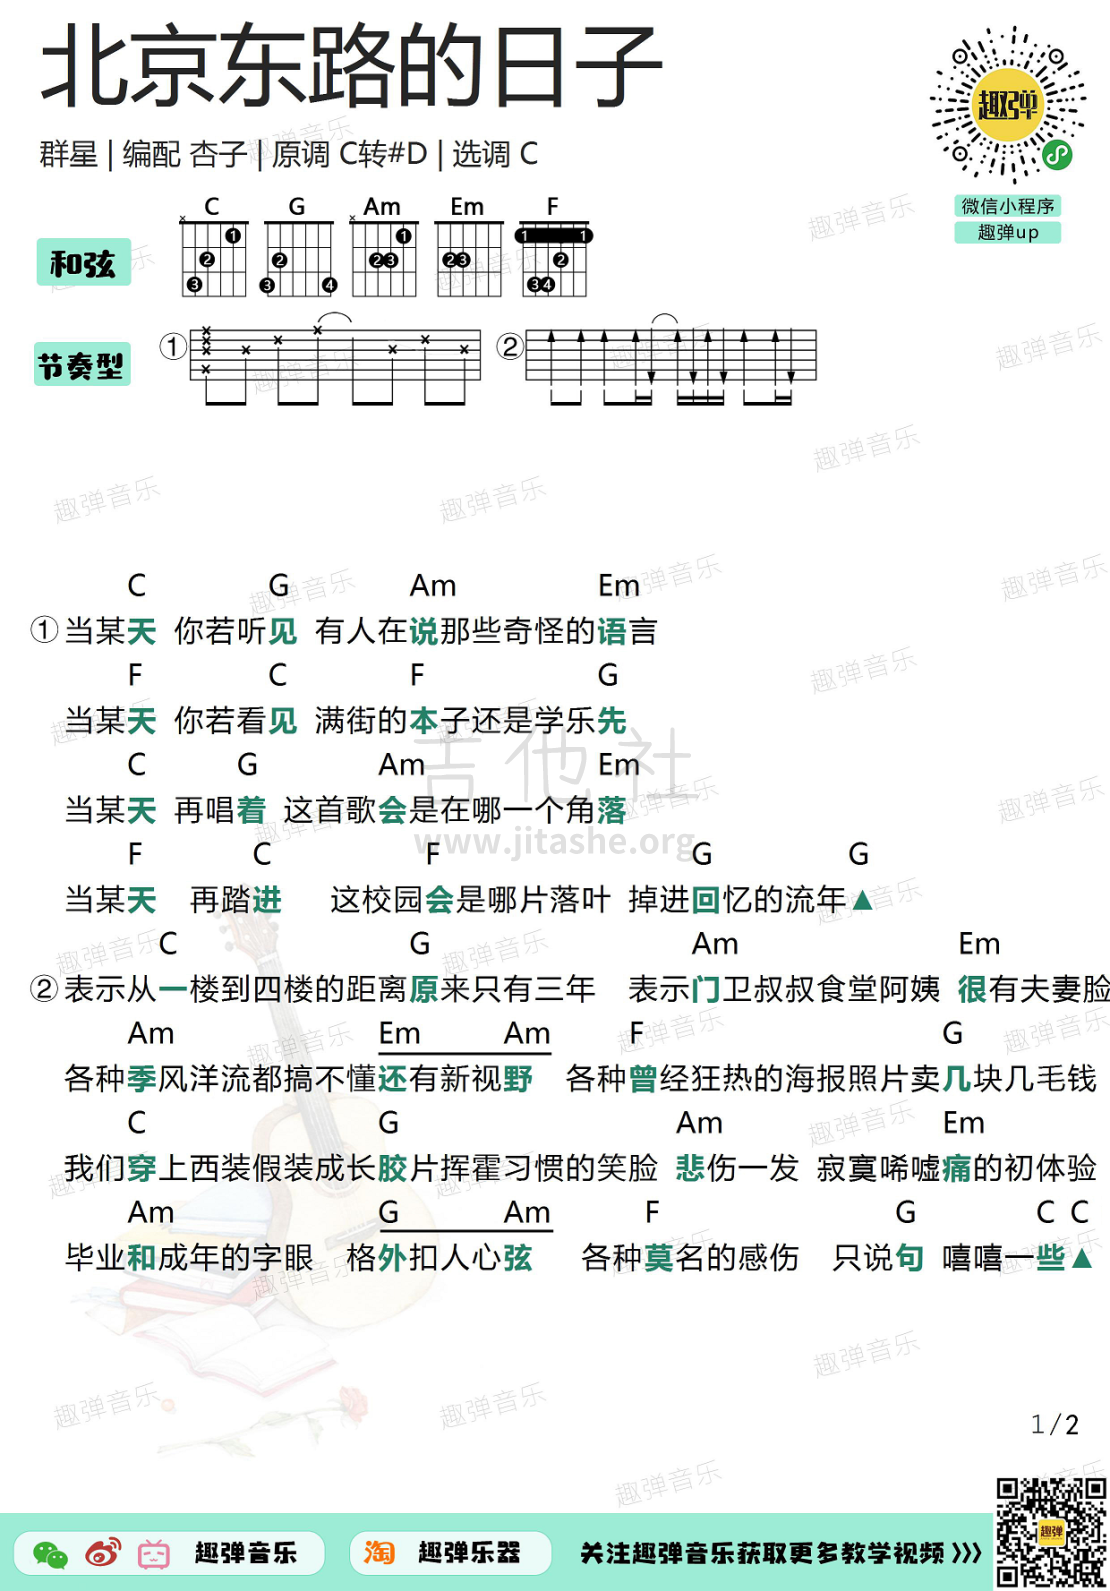 打印:北京东路的日子（高清C调和弦谱）吉他谱_群星(Various Artists)_北京东路的日子1.jpg